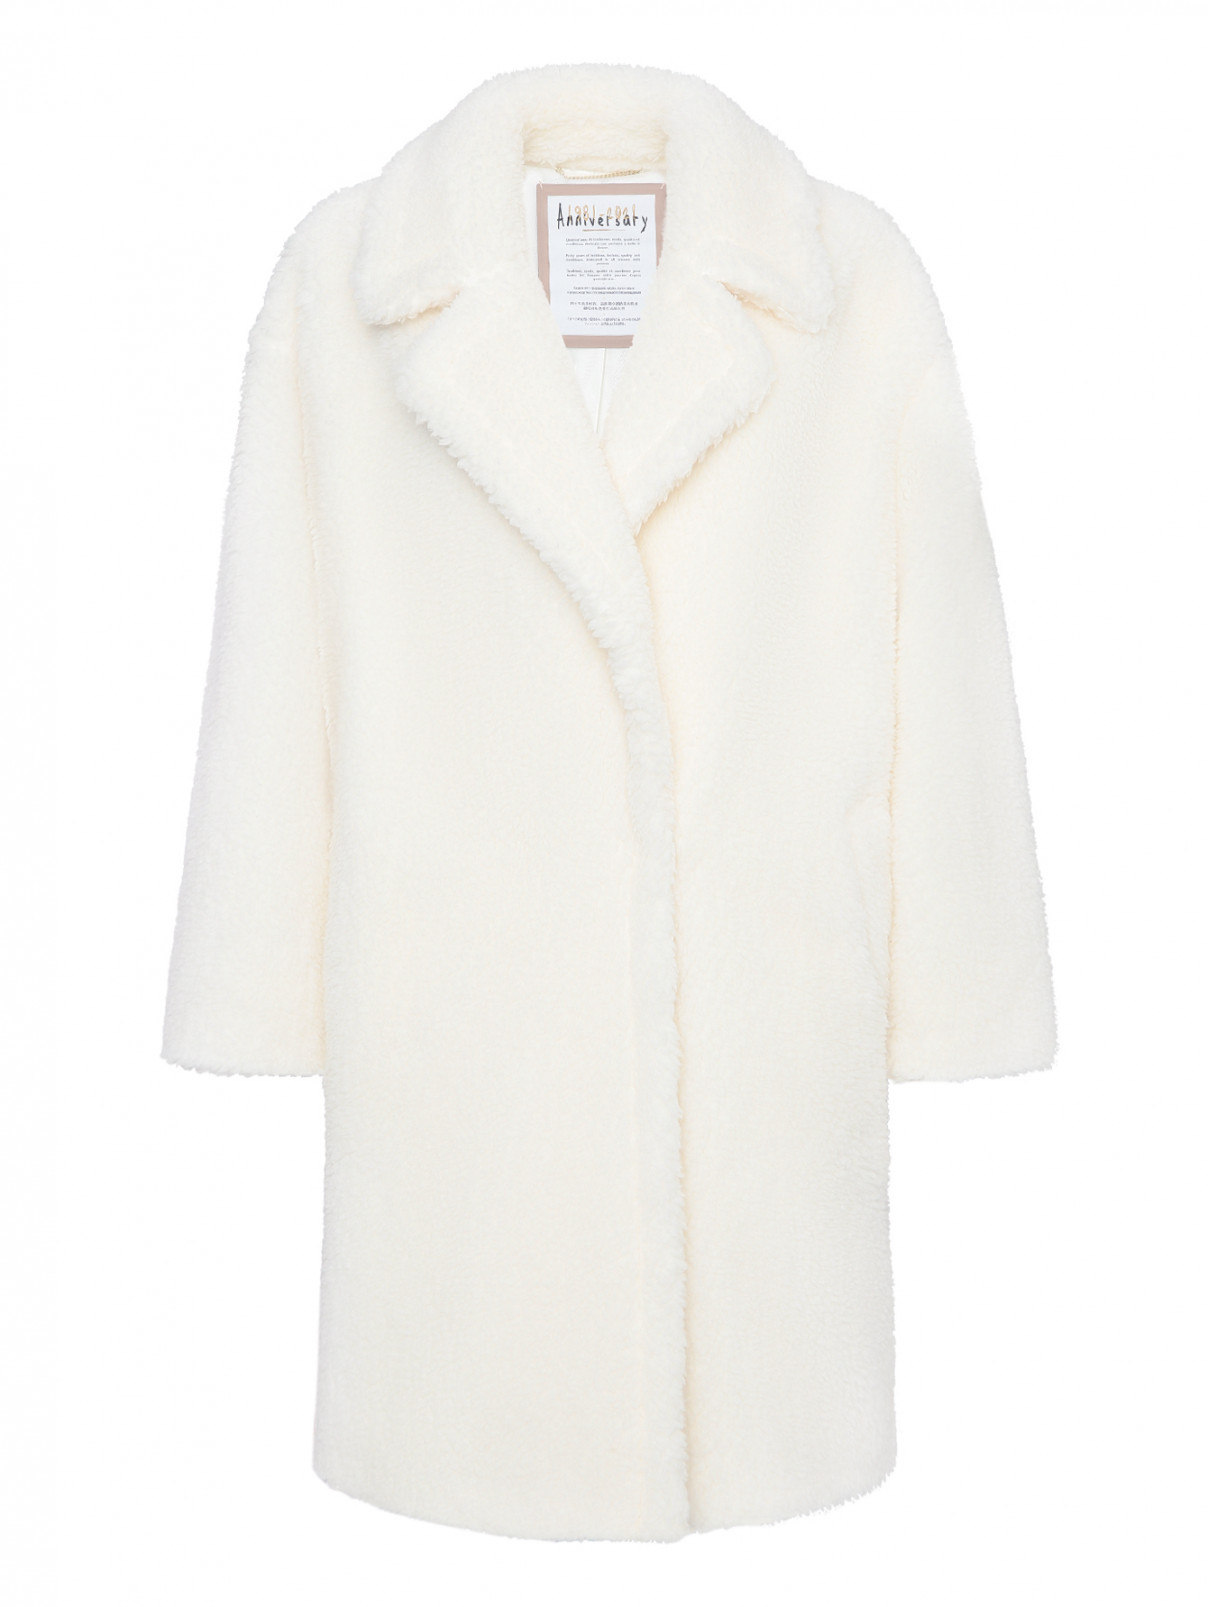 Пальто-шуба из шерсти Marina Rinaldi  –  Общий вид  – Цвет:  Белый